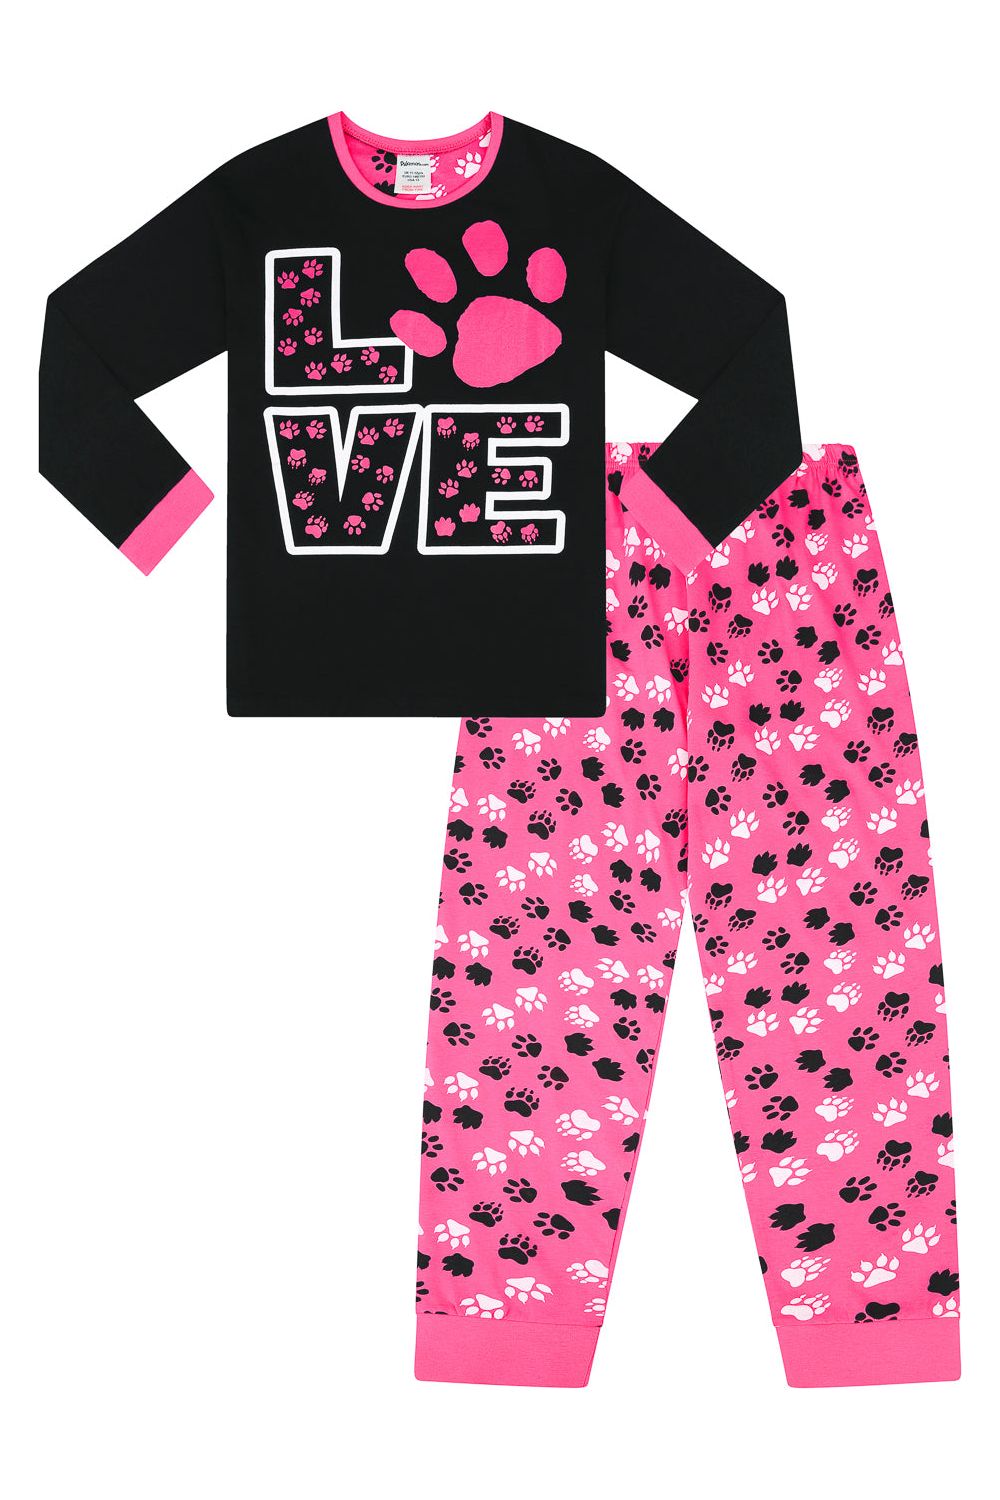 Cute Girl's Love Animal Paw Print Pyjamas - Pyjamas.com